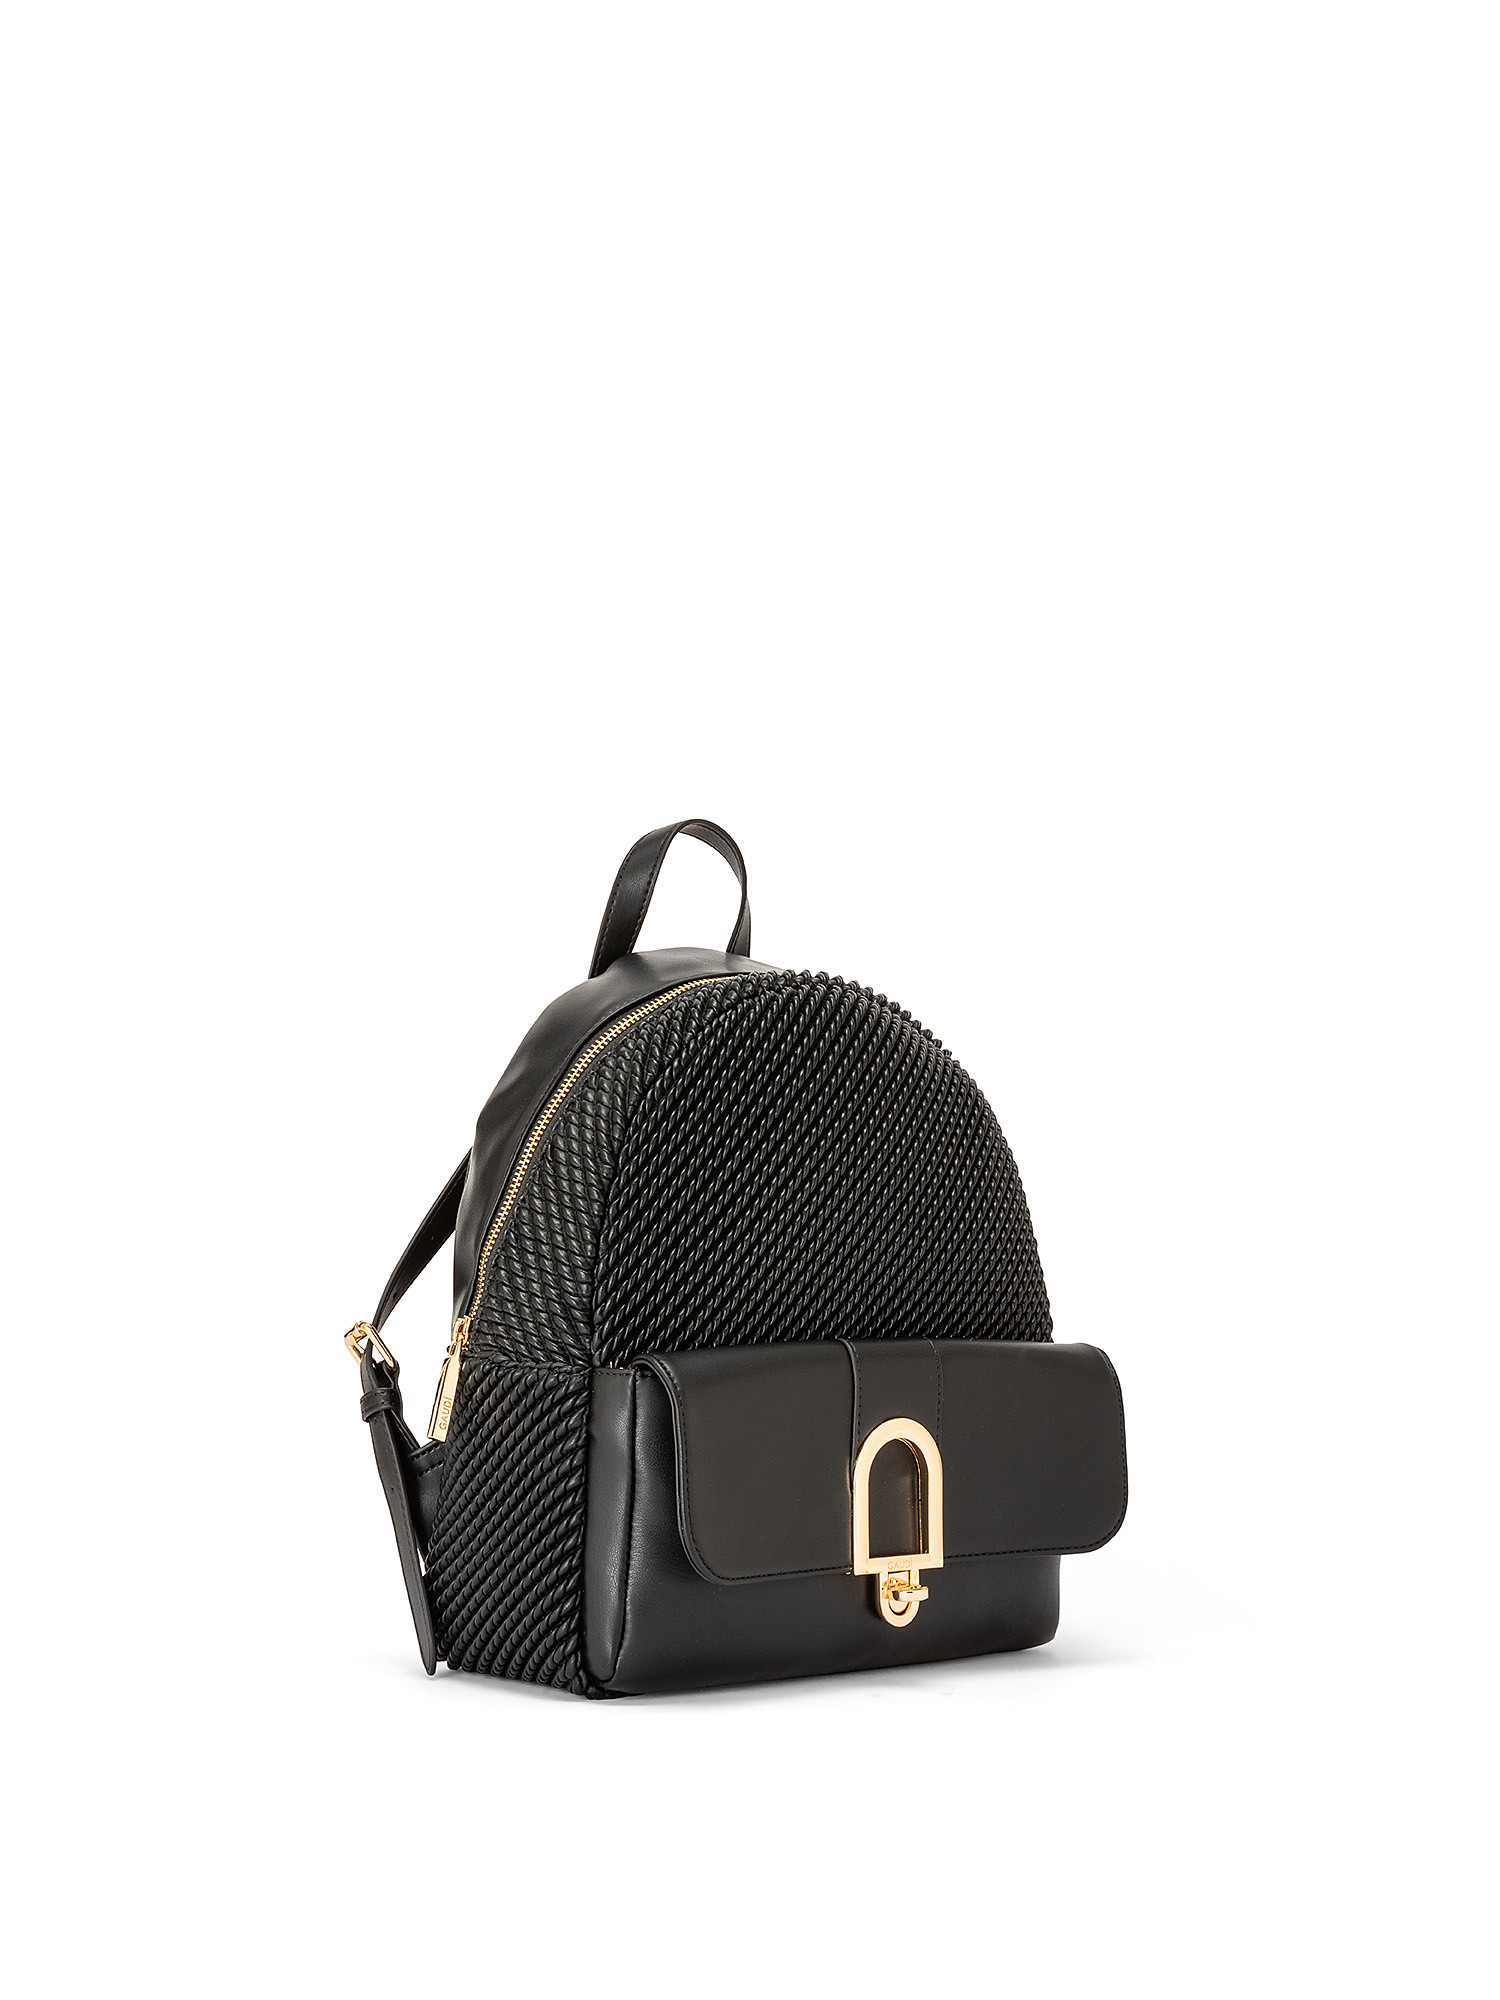 Thalissa backpack, Black, large image number 1